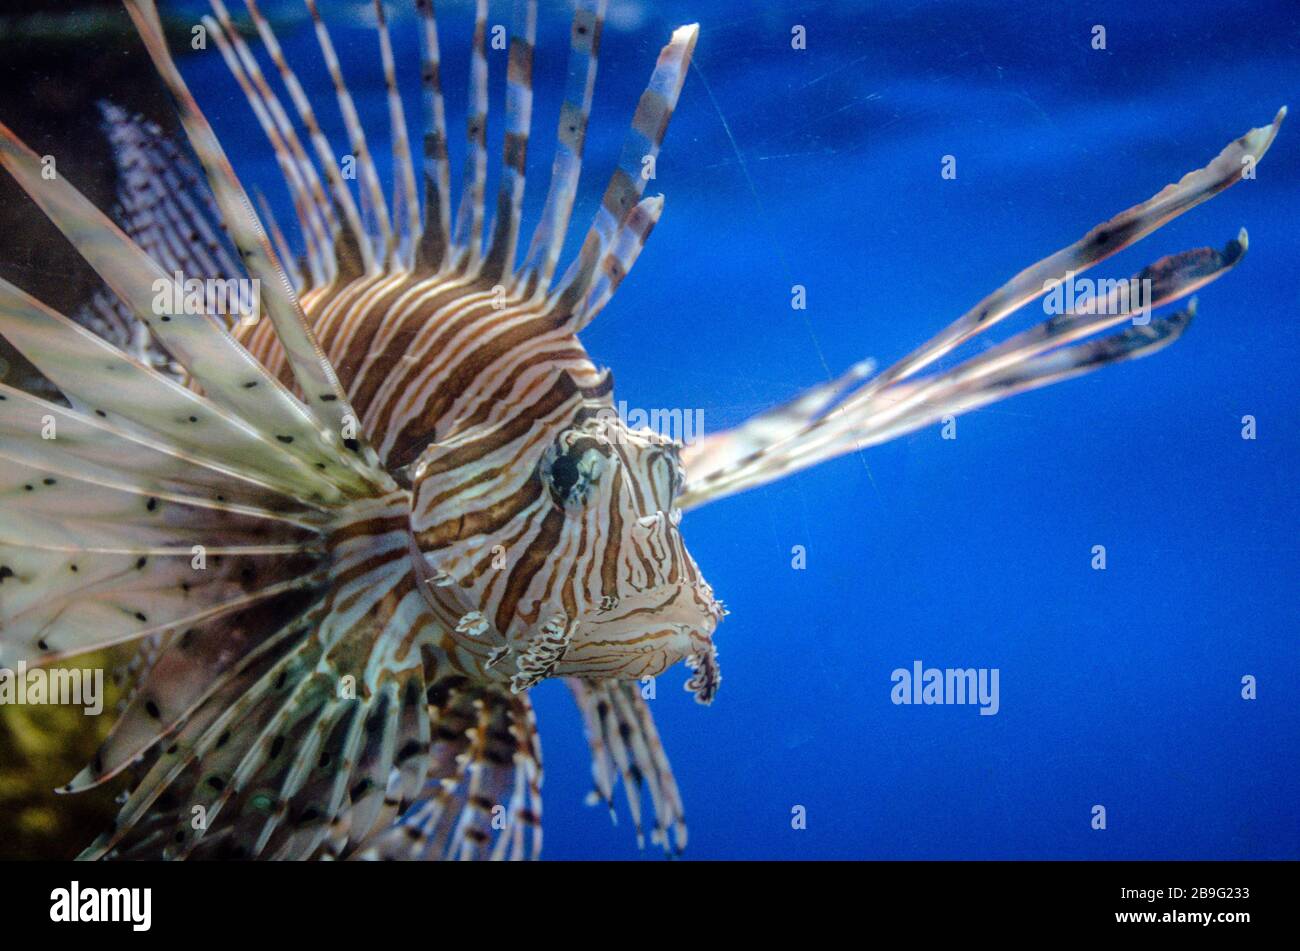 Lion Fish in a Aquarium. Stock Photo